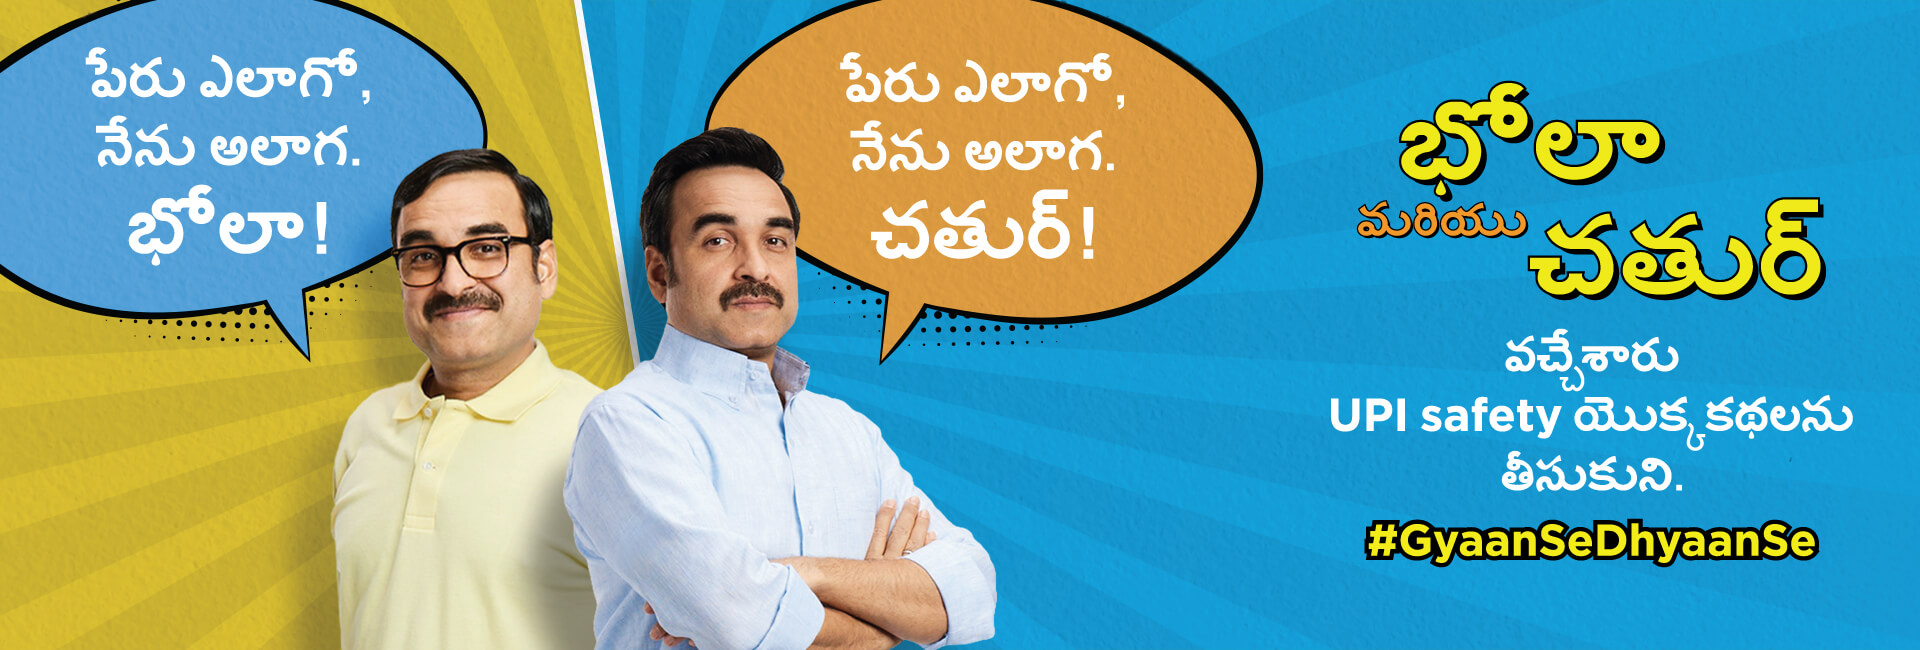 UPI Safety Campaign Telugu